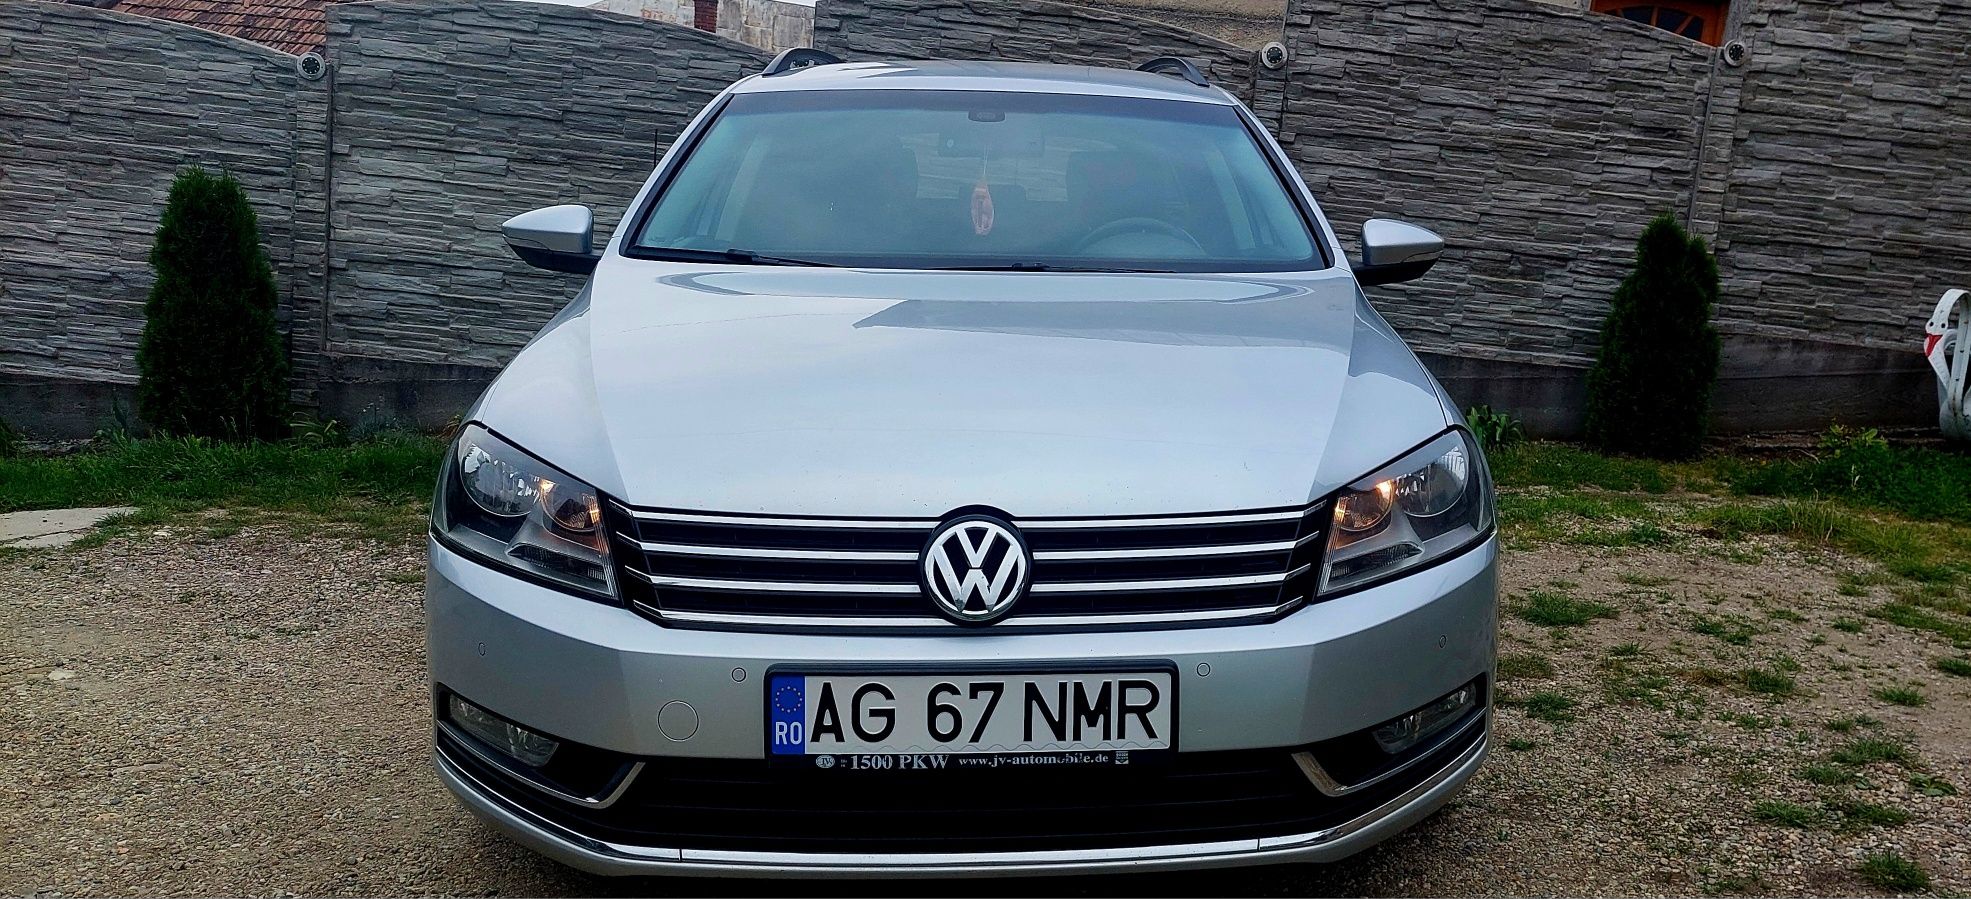 Vand Volkswagen Passat B7 Euro 5 2014 Facelift Navi Camera marsarier